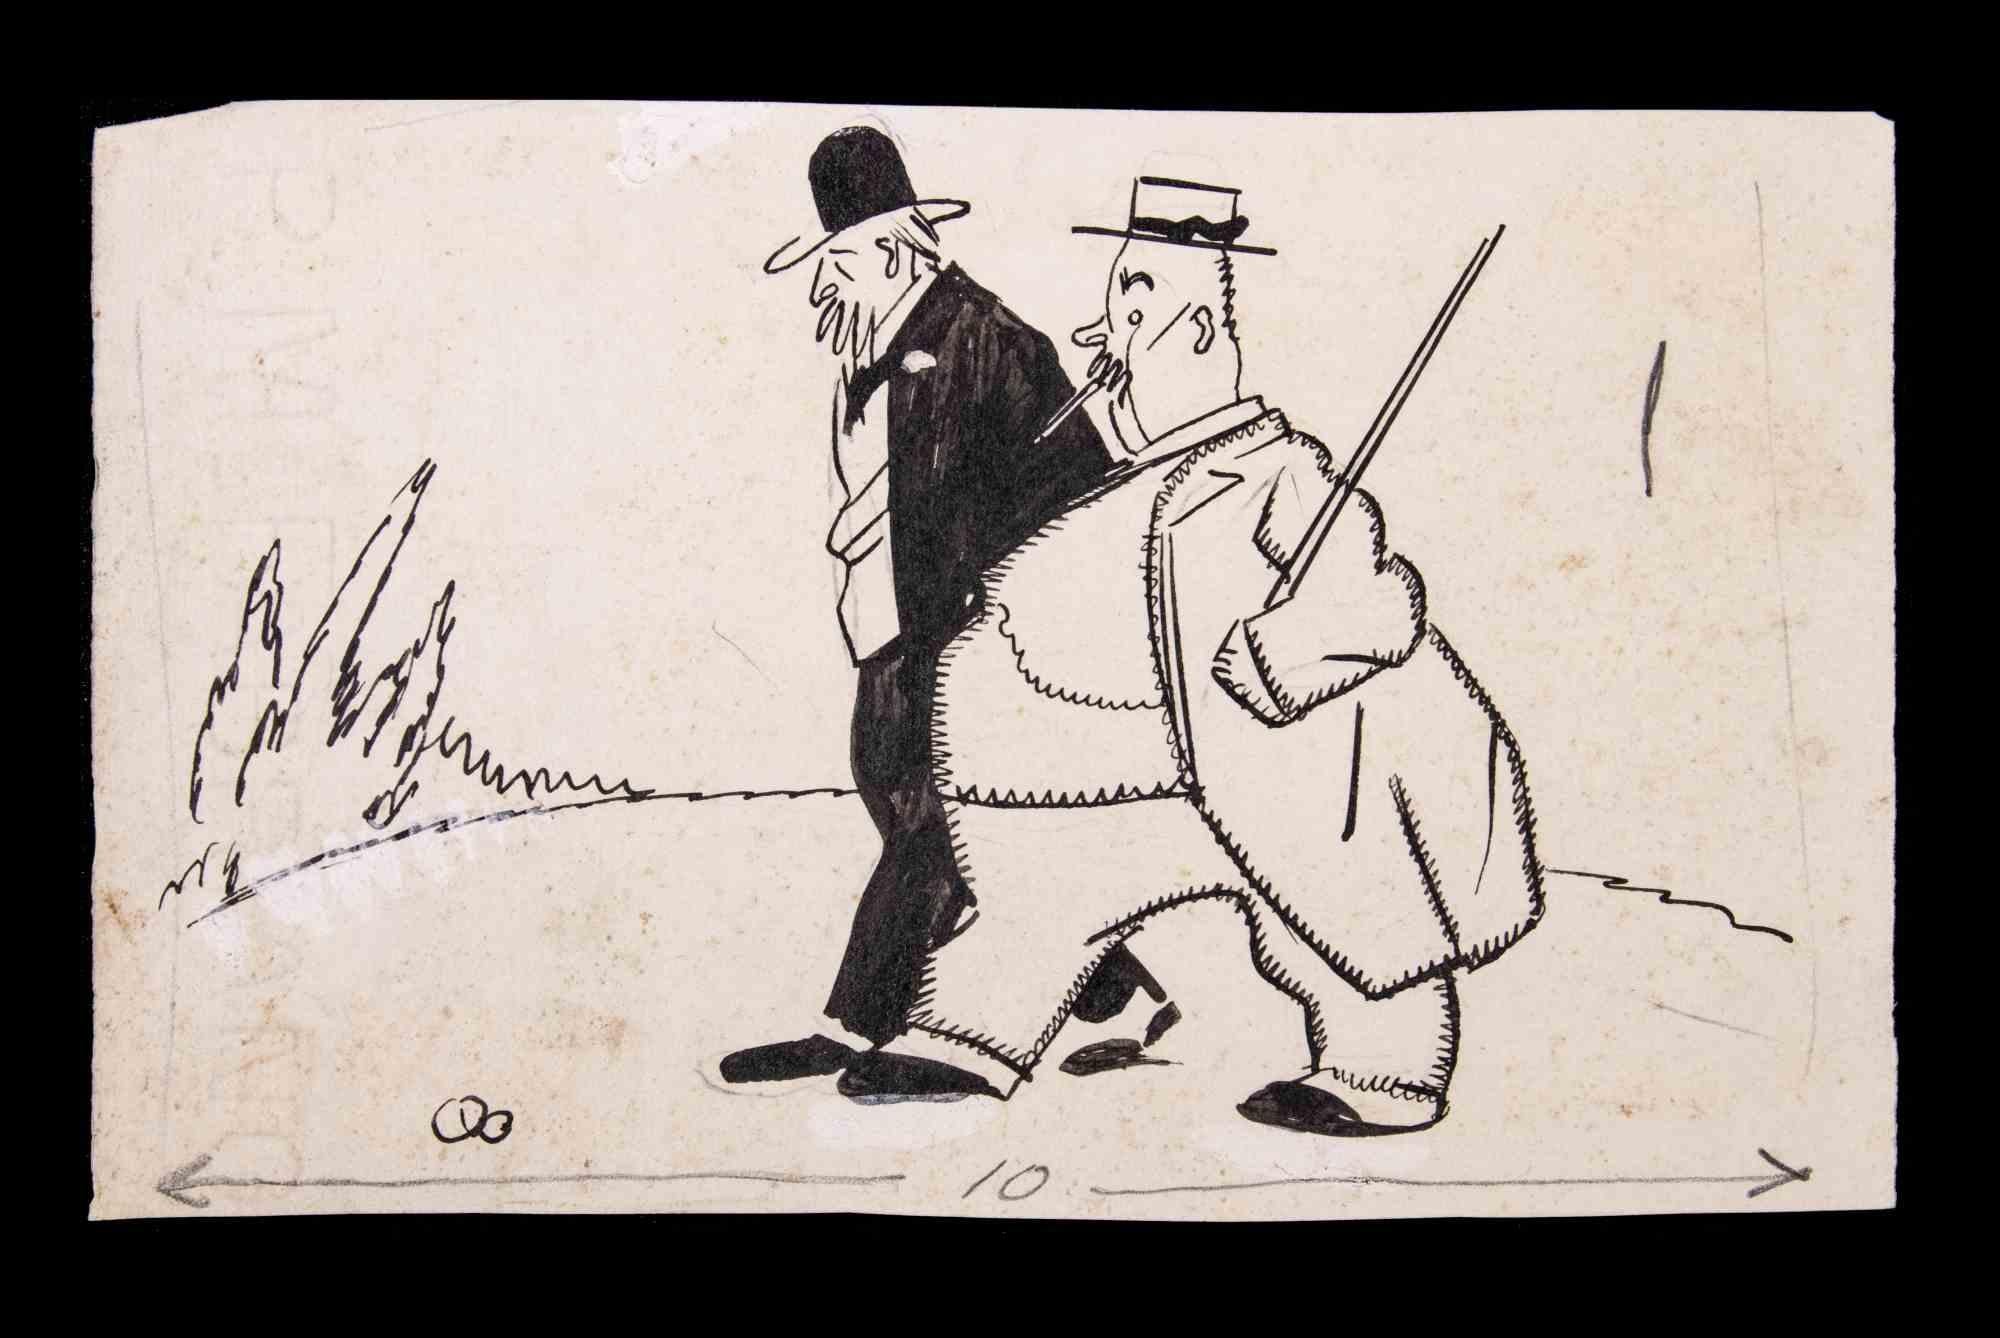 Walking Men ist ein zeichnerisches Werk von RIV "Carlo Rivalta (1887-1941)" aus dem frühen 20.

Tempera- und Tuschezeichnung auf Papier.

Der Erhaltungszustand ist gut mit leichten Stockflecken.